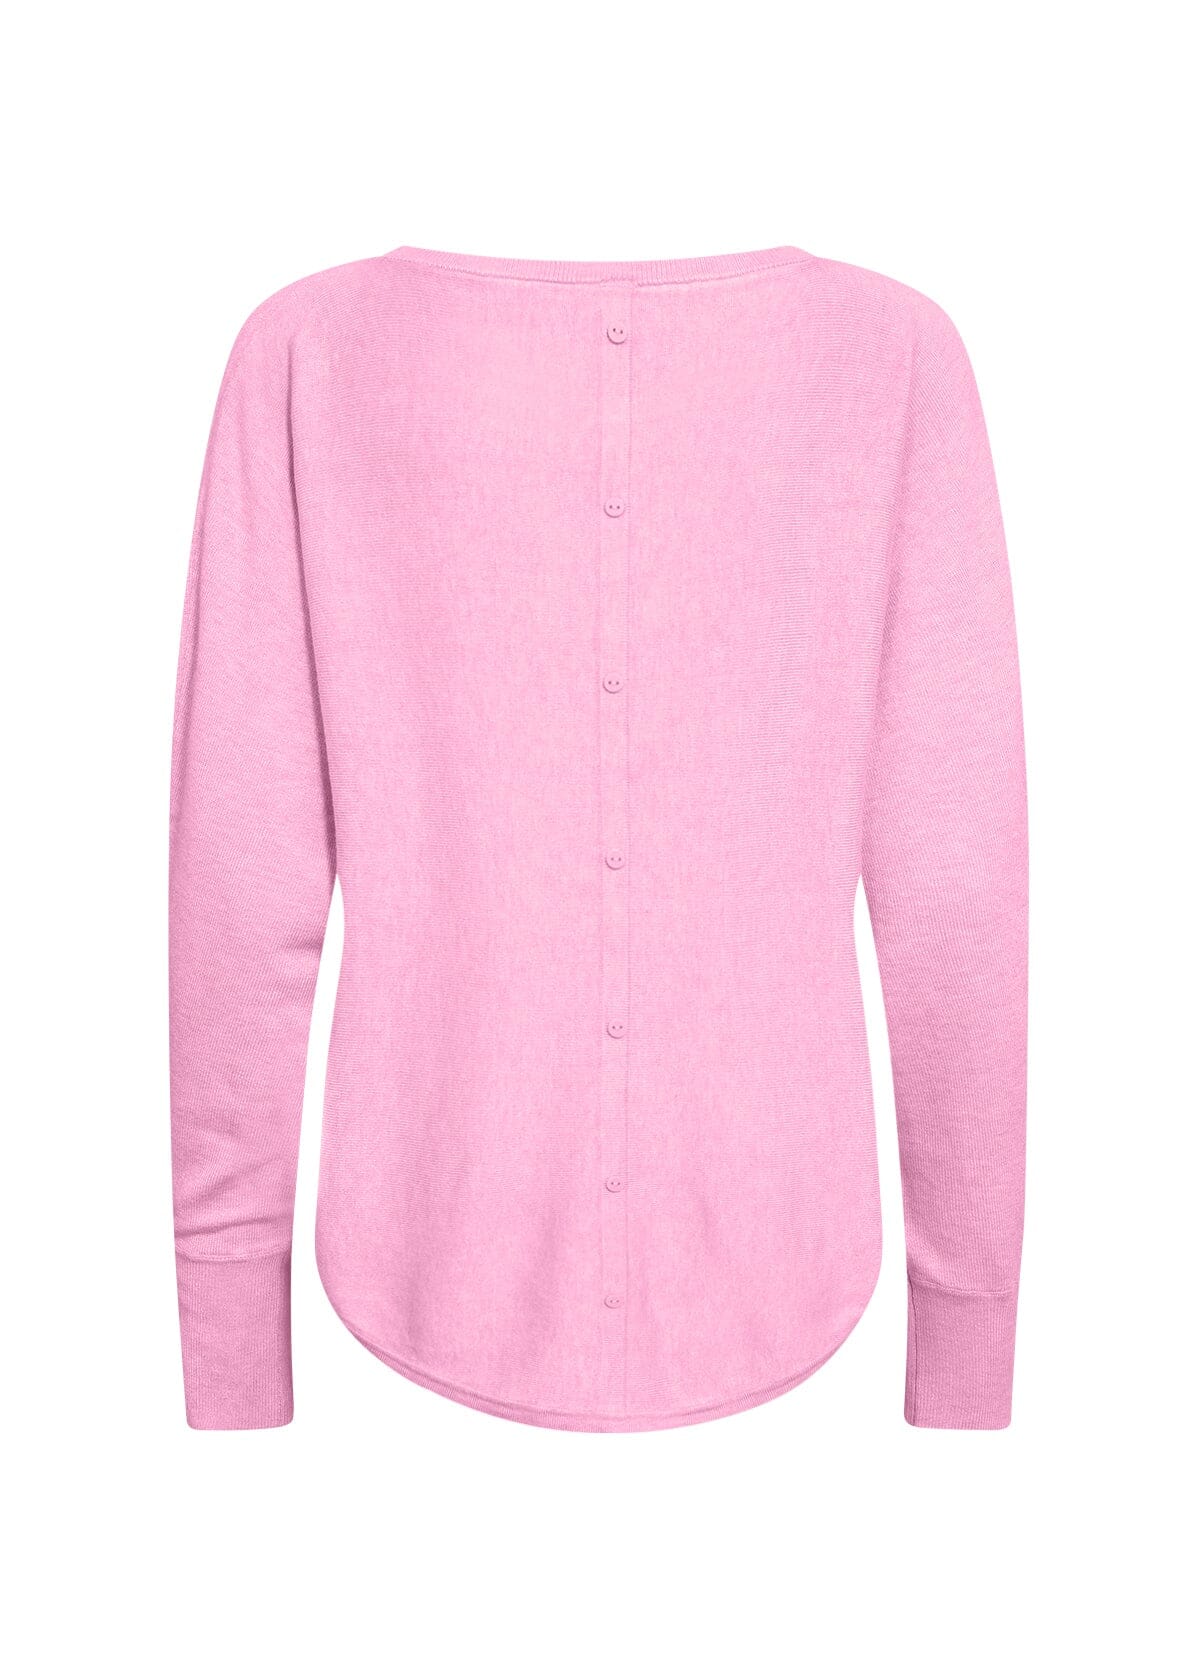 Dollie 620 Pullover in Pink Melange Pullover Soyaconcept 